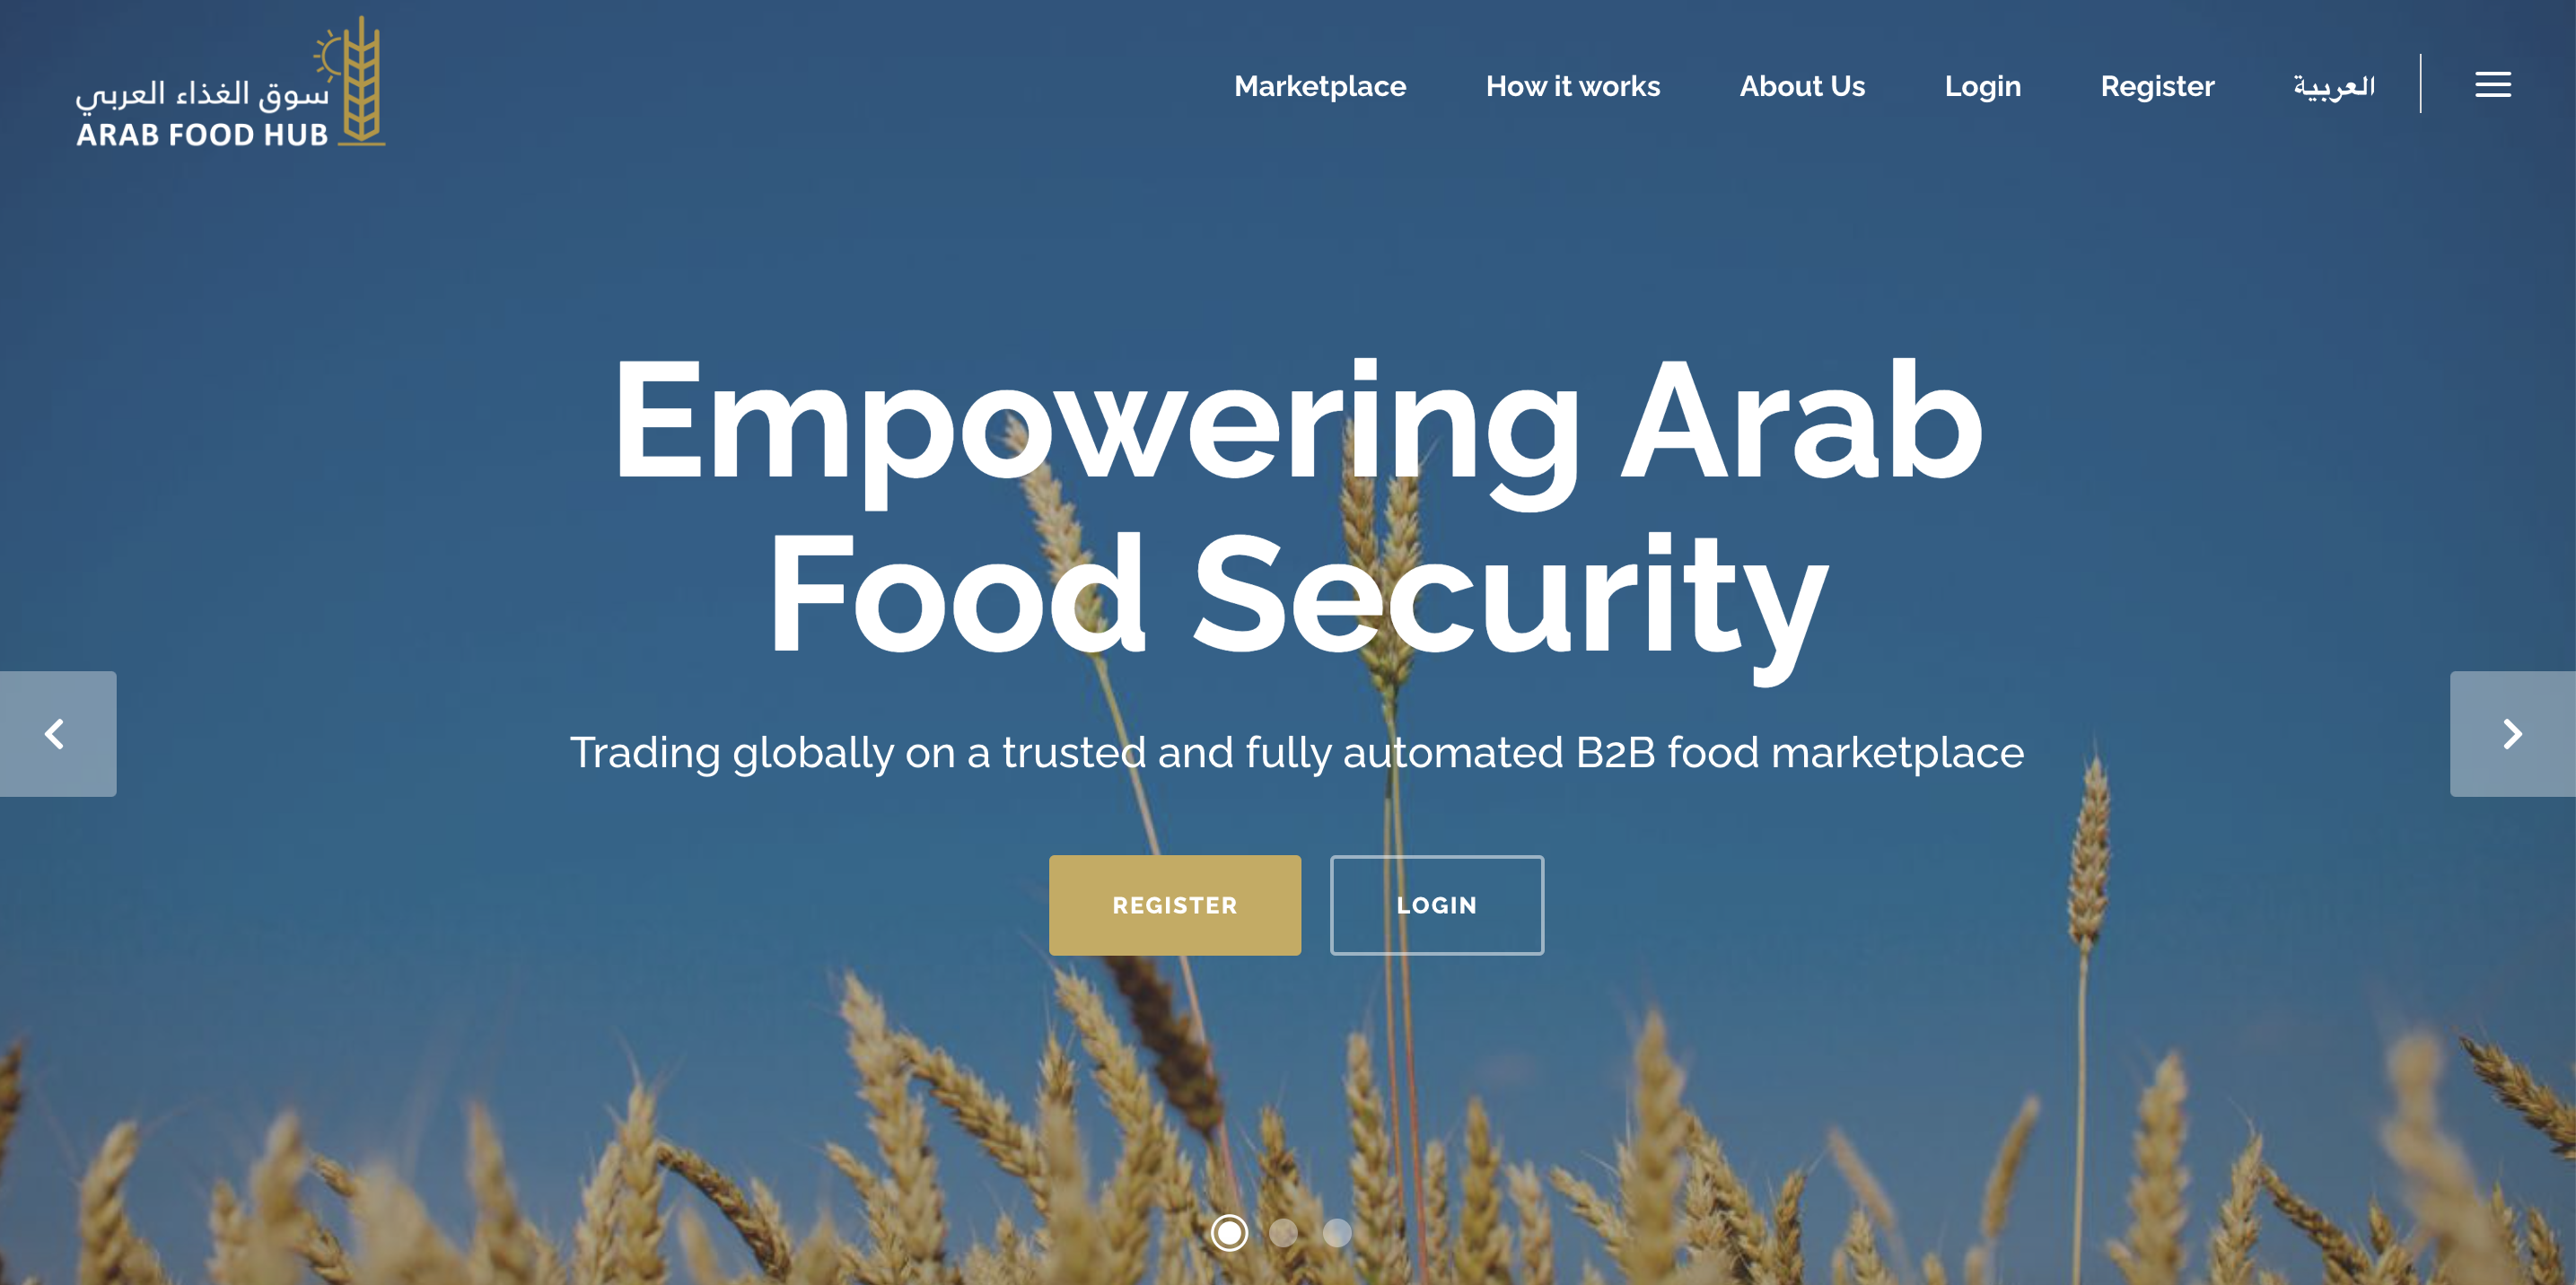 Arab Food Hub project